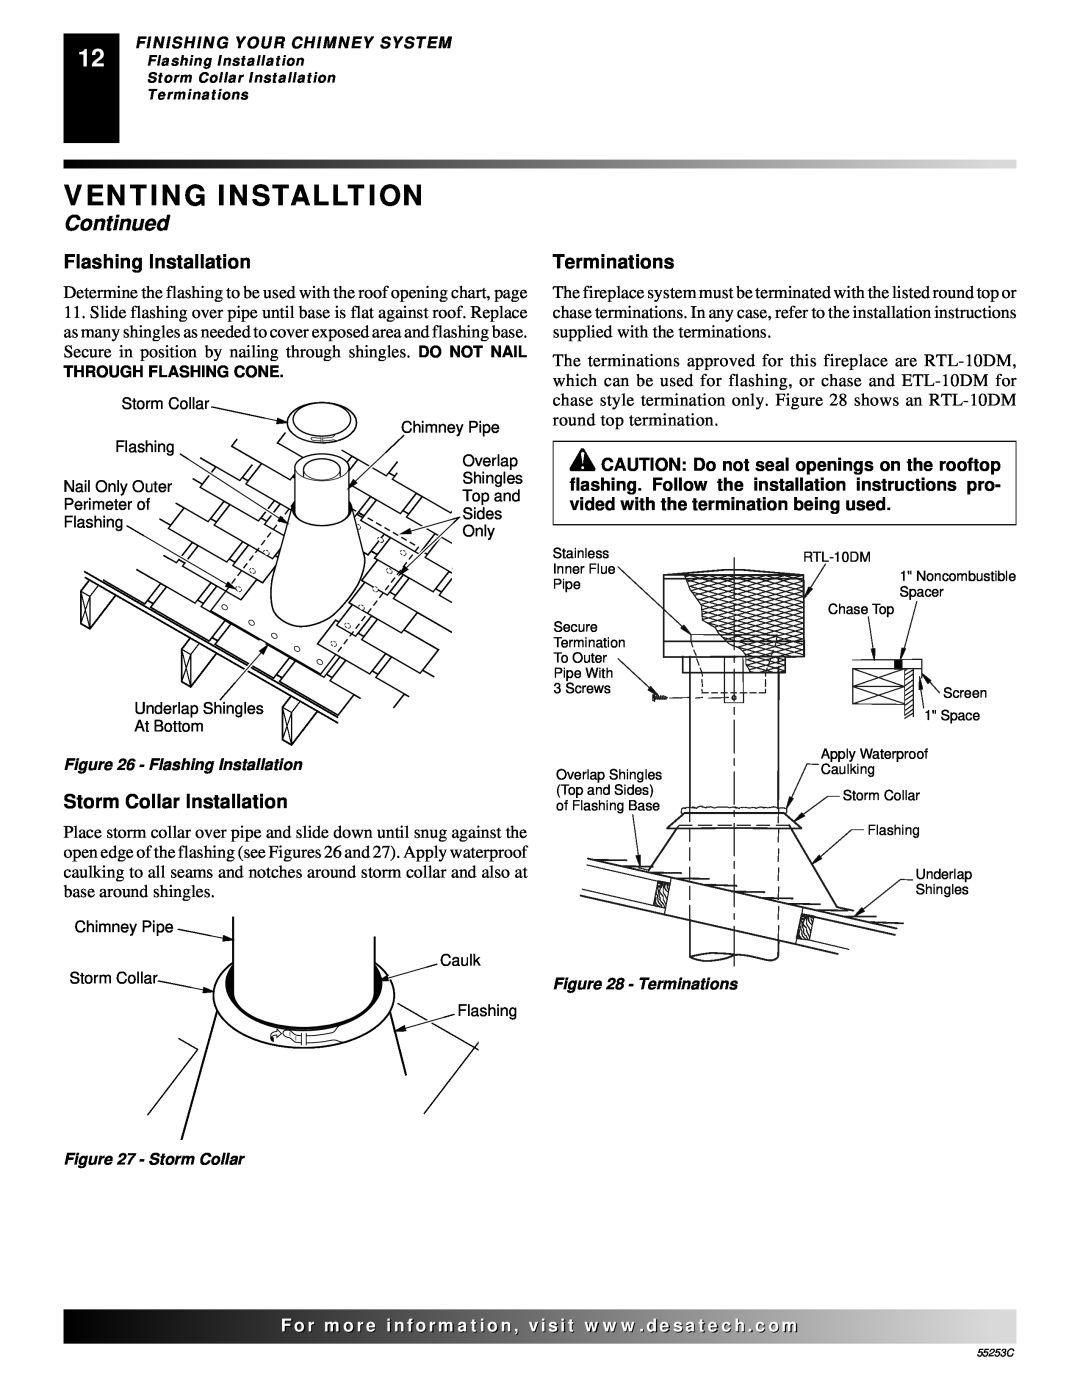 Desa V3610ST manual Venting Installtion, Continued, Flashing Installation, Terminations, Storm Collar Installation 